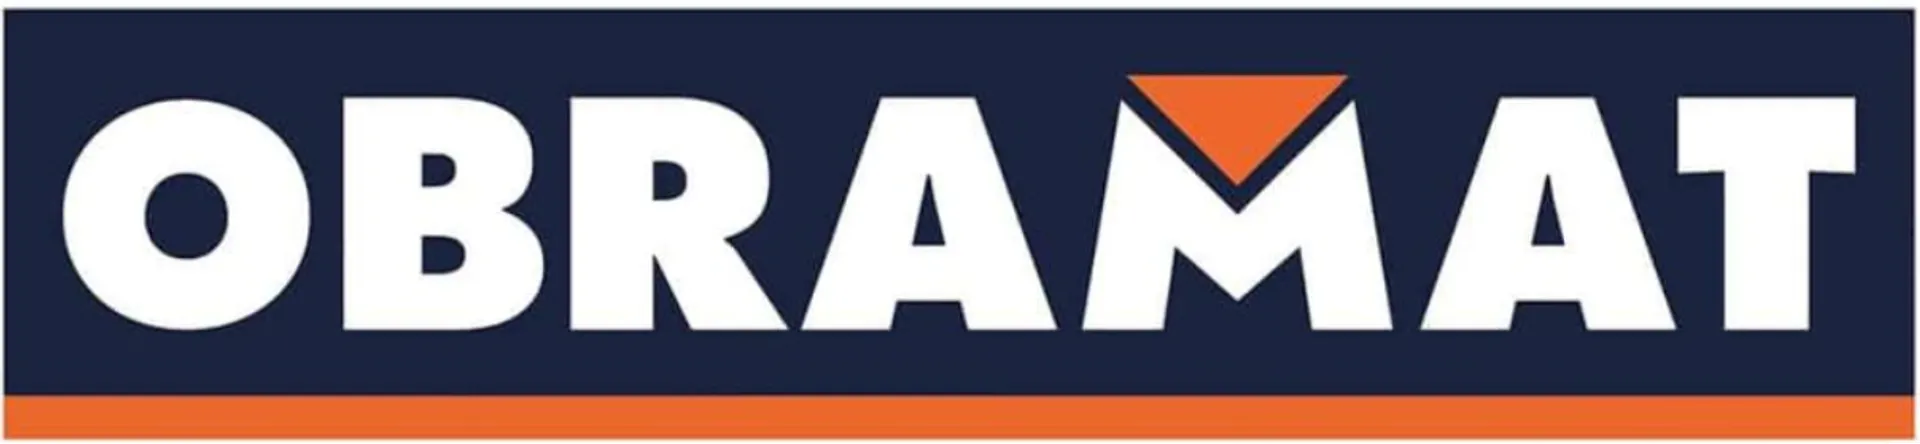 OBRAMAT logo de catálogo